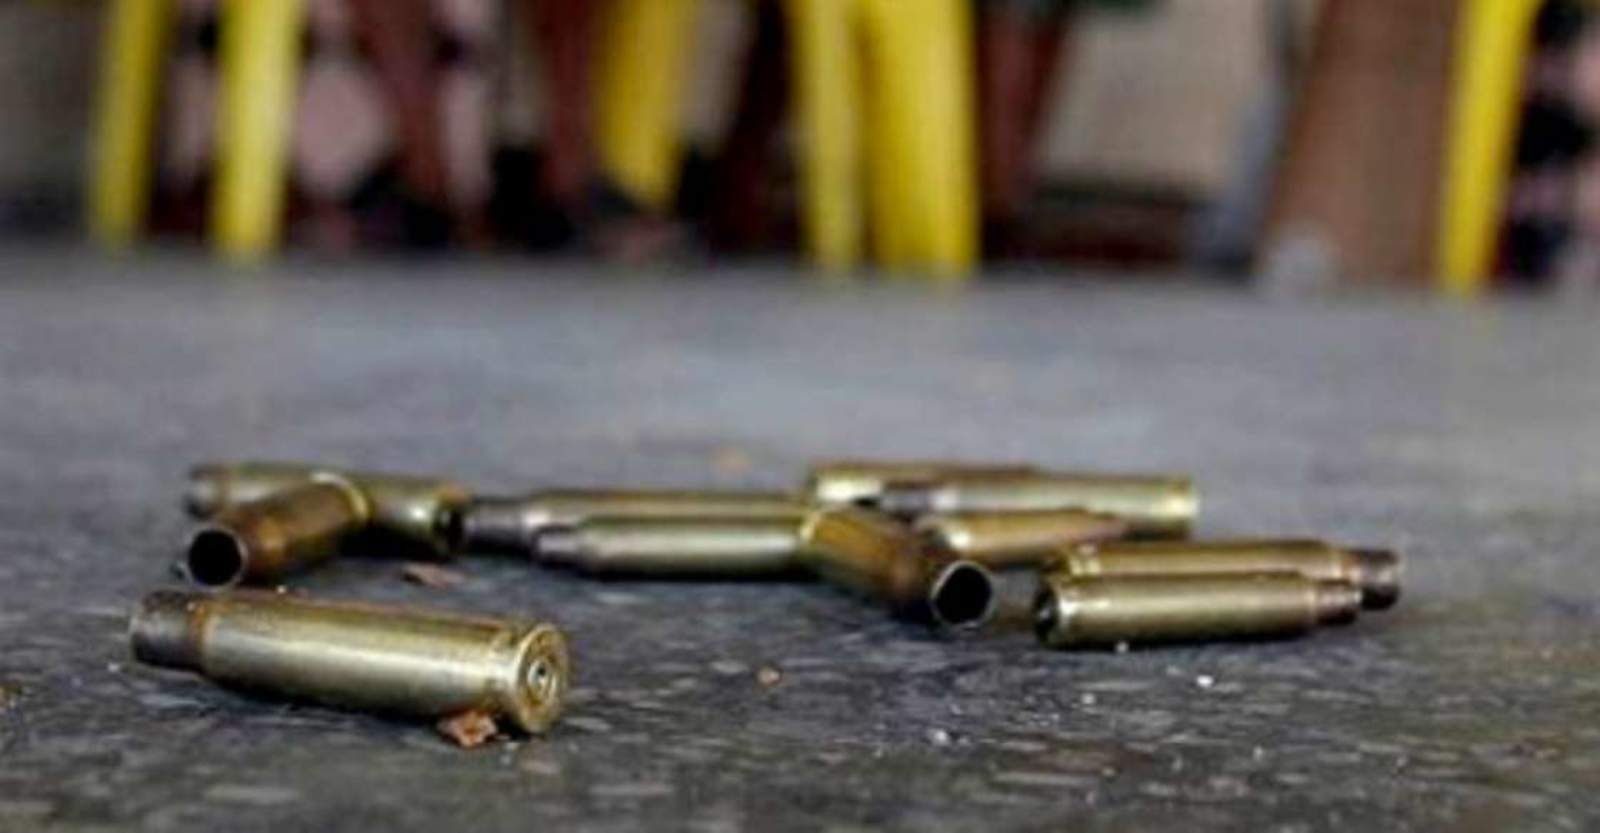 Según el reporte, los peritos en Criminalística de la Fiscalía General del Estado recopilaron sobre la calle Fráncico Javier Mina, un total de 15 casquillos percutidos, presuntamente de dos armas de fuego de diversos calibres. (ARCHIVO)